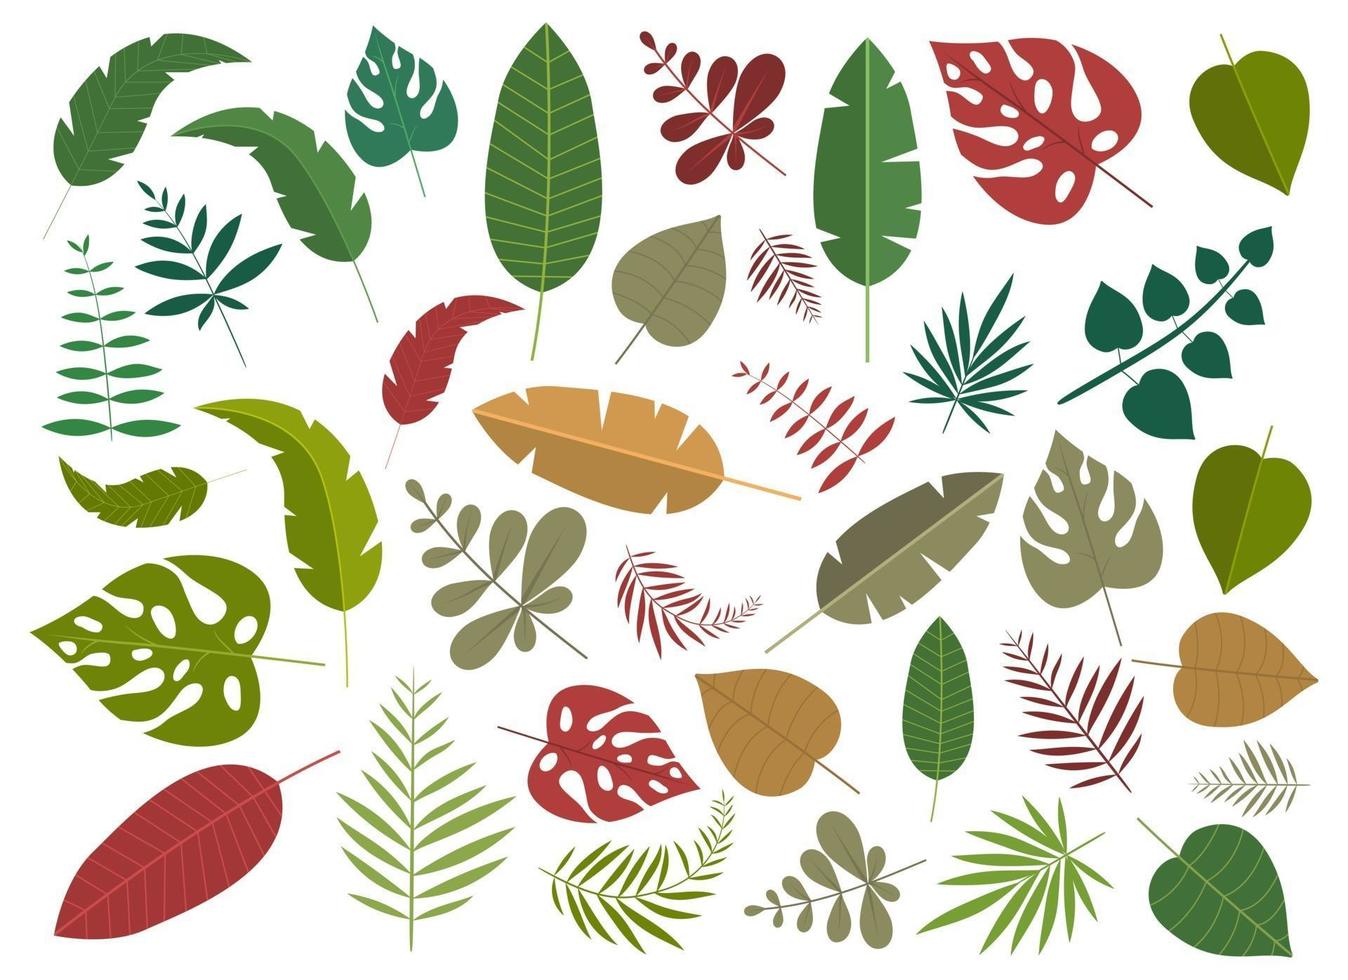 feuilles tropicales vector design illustration set isolé sur fond blanc